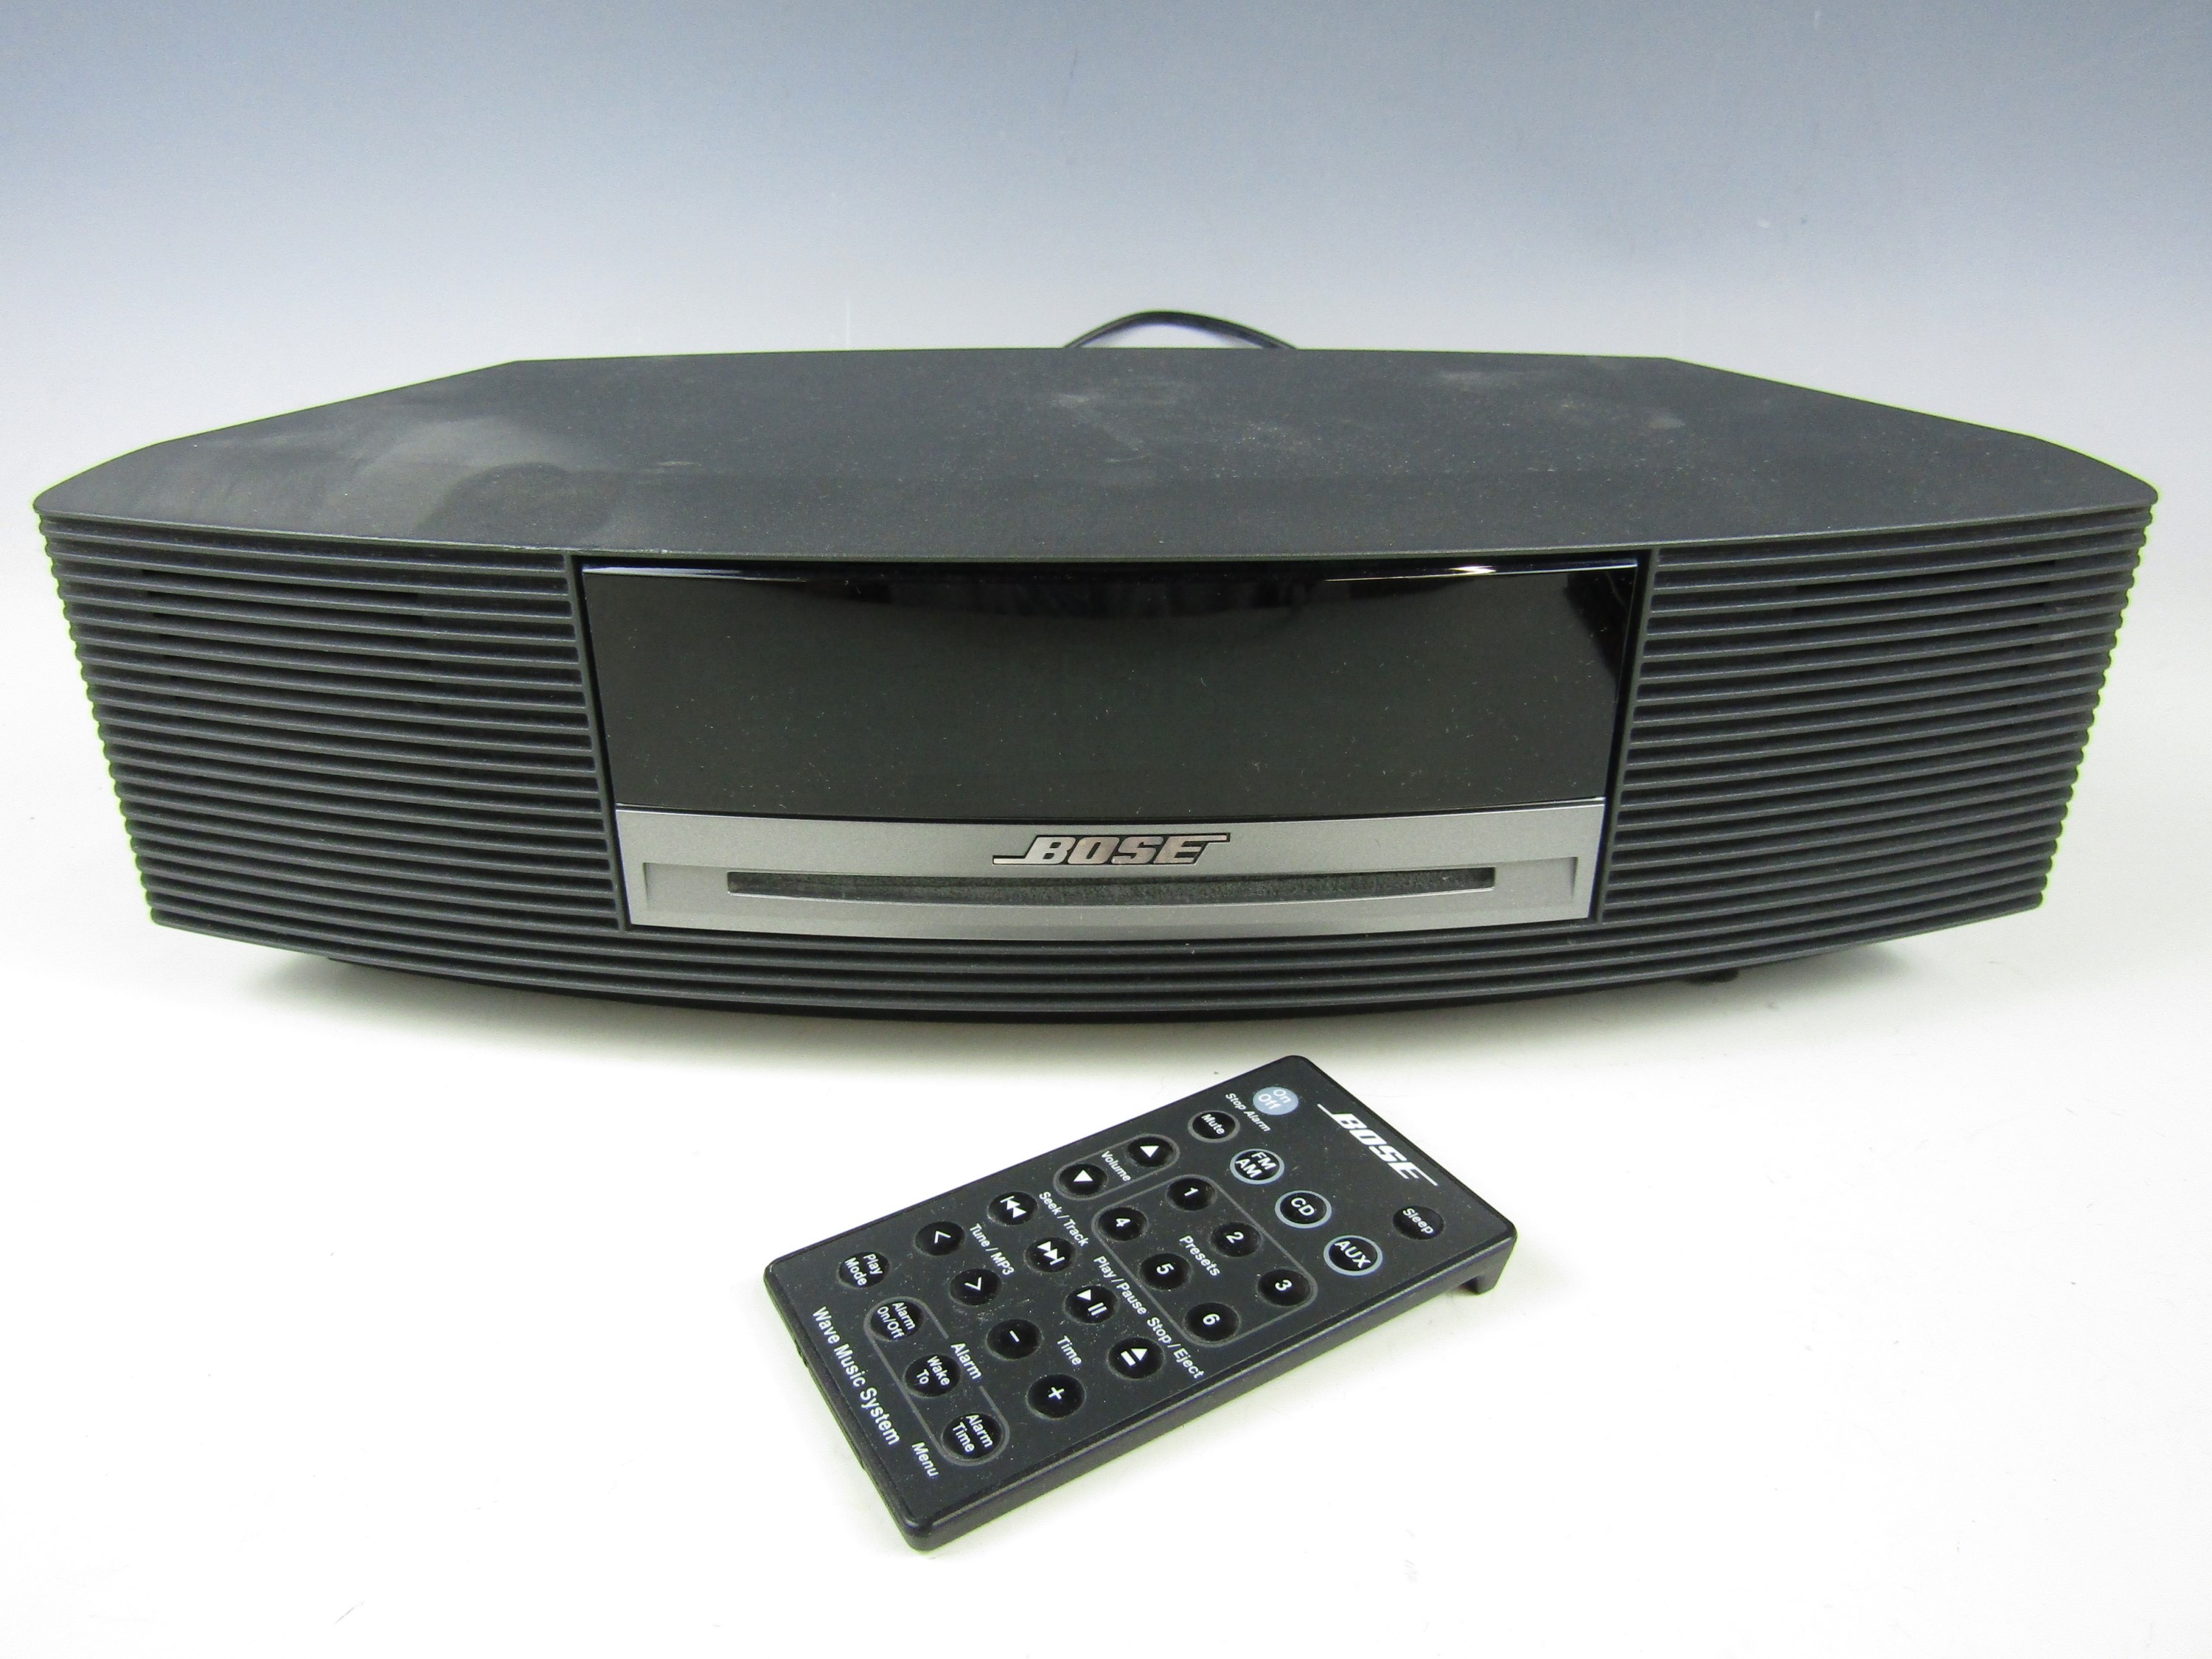 A Bose Wave music system, model AWRCCJ